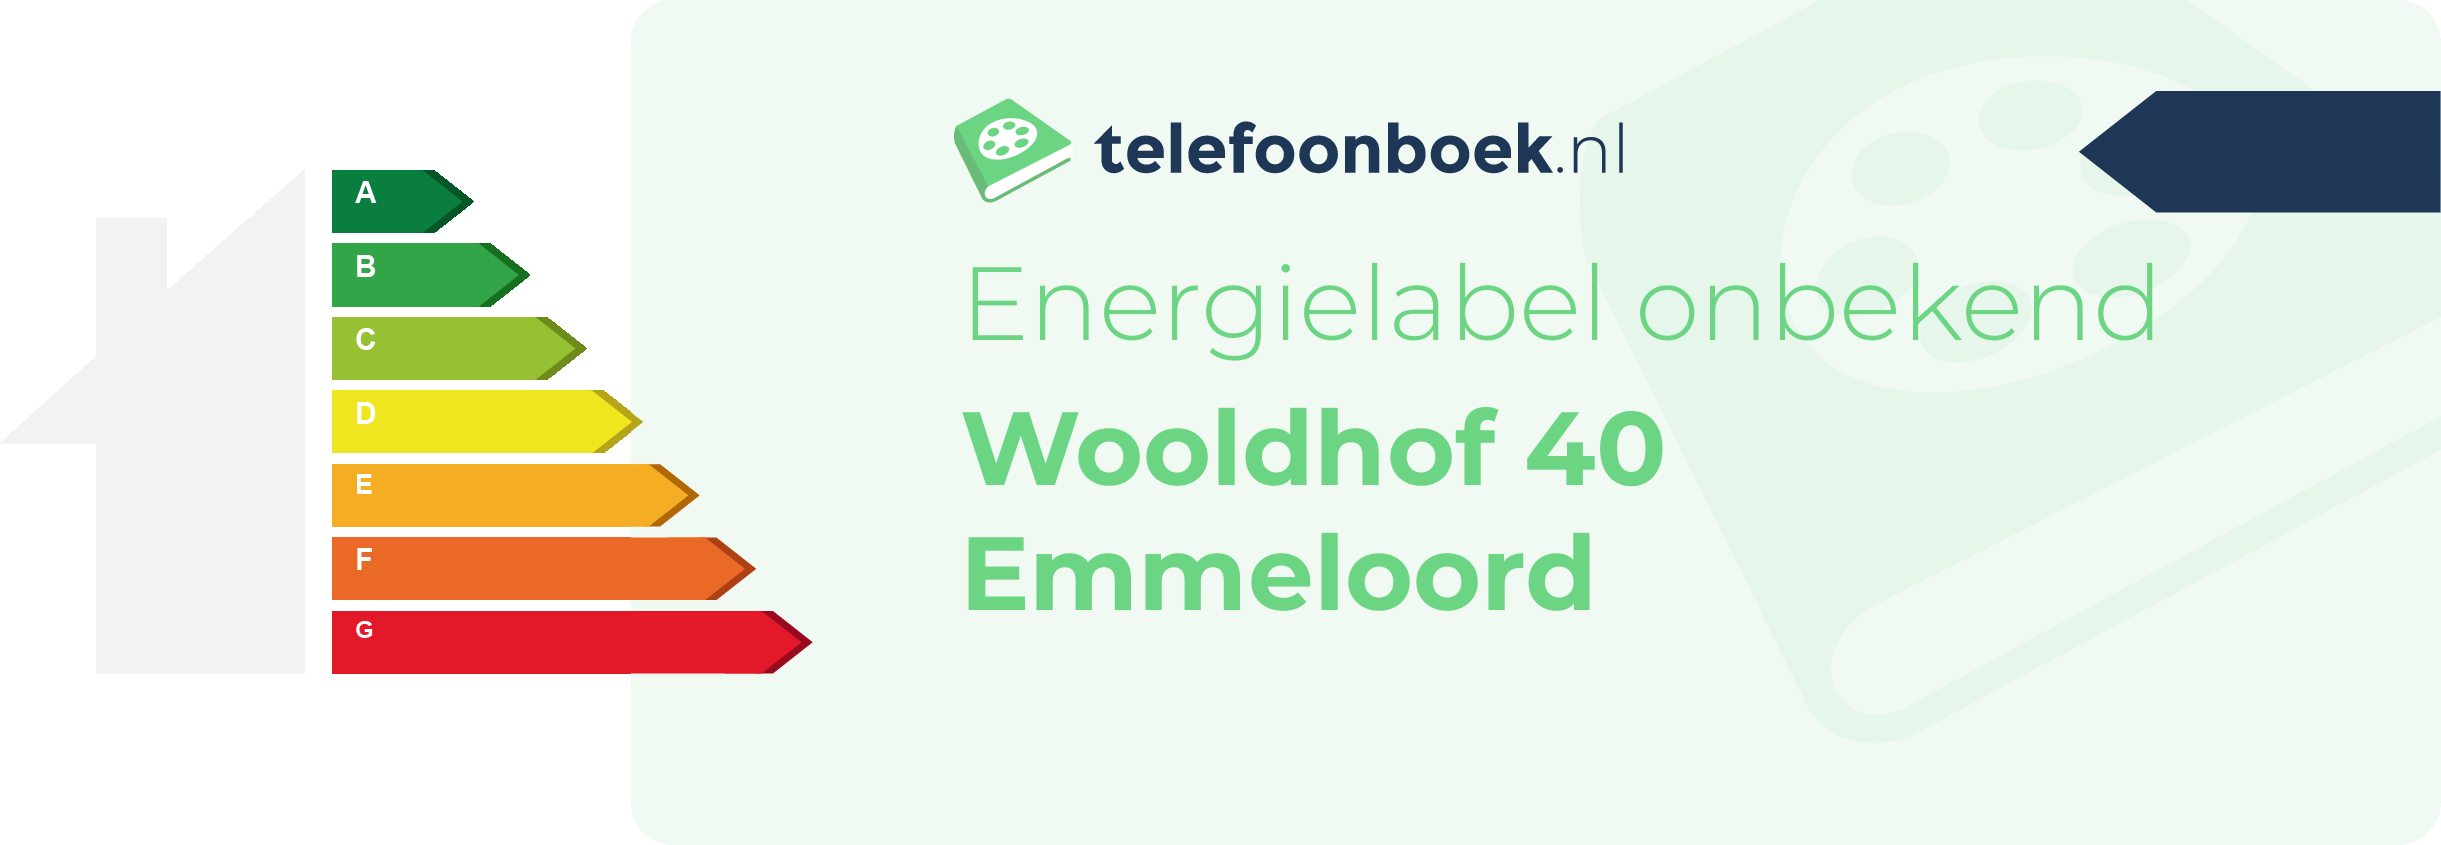 Energielabel Wooldhof 40 Emmeloord